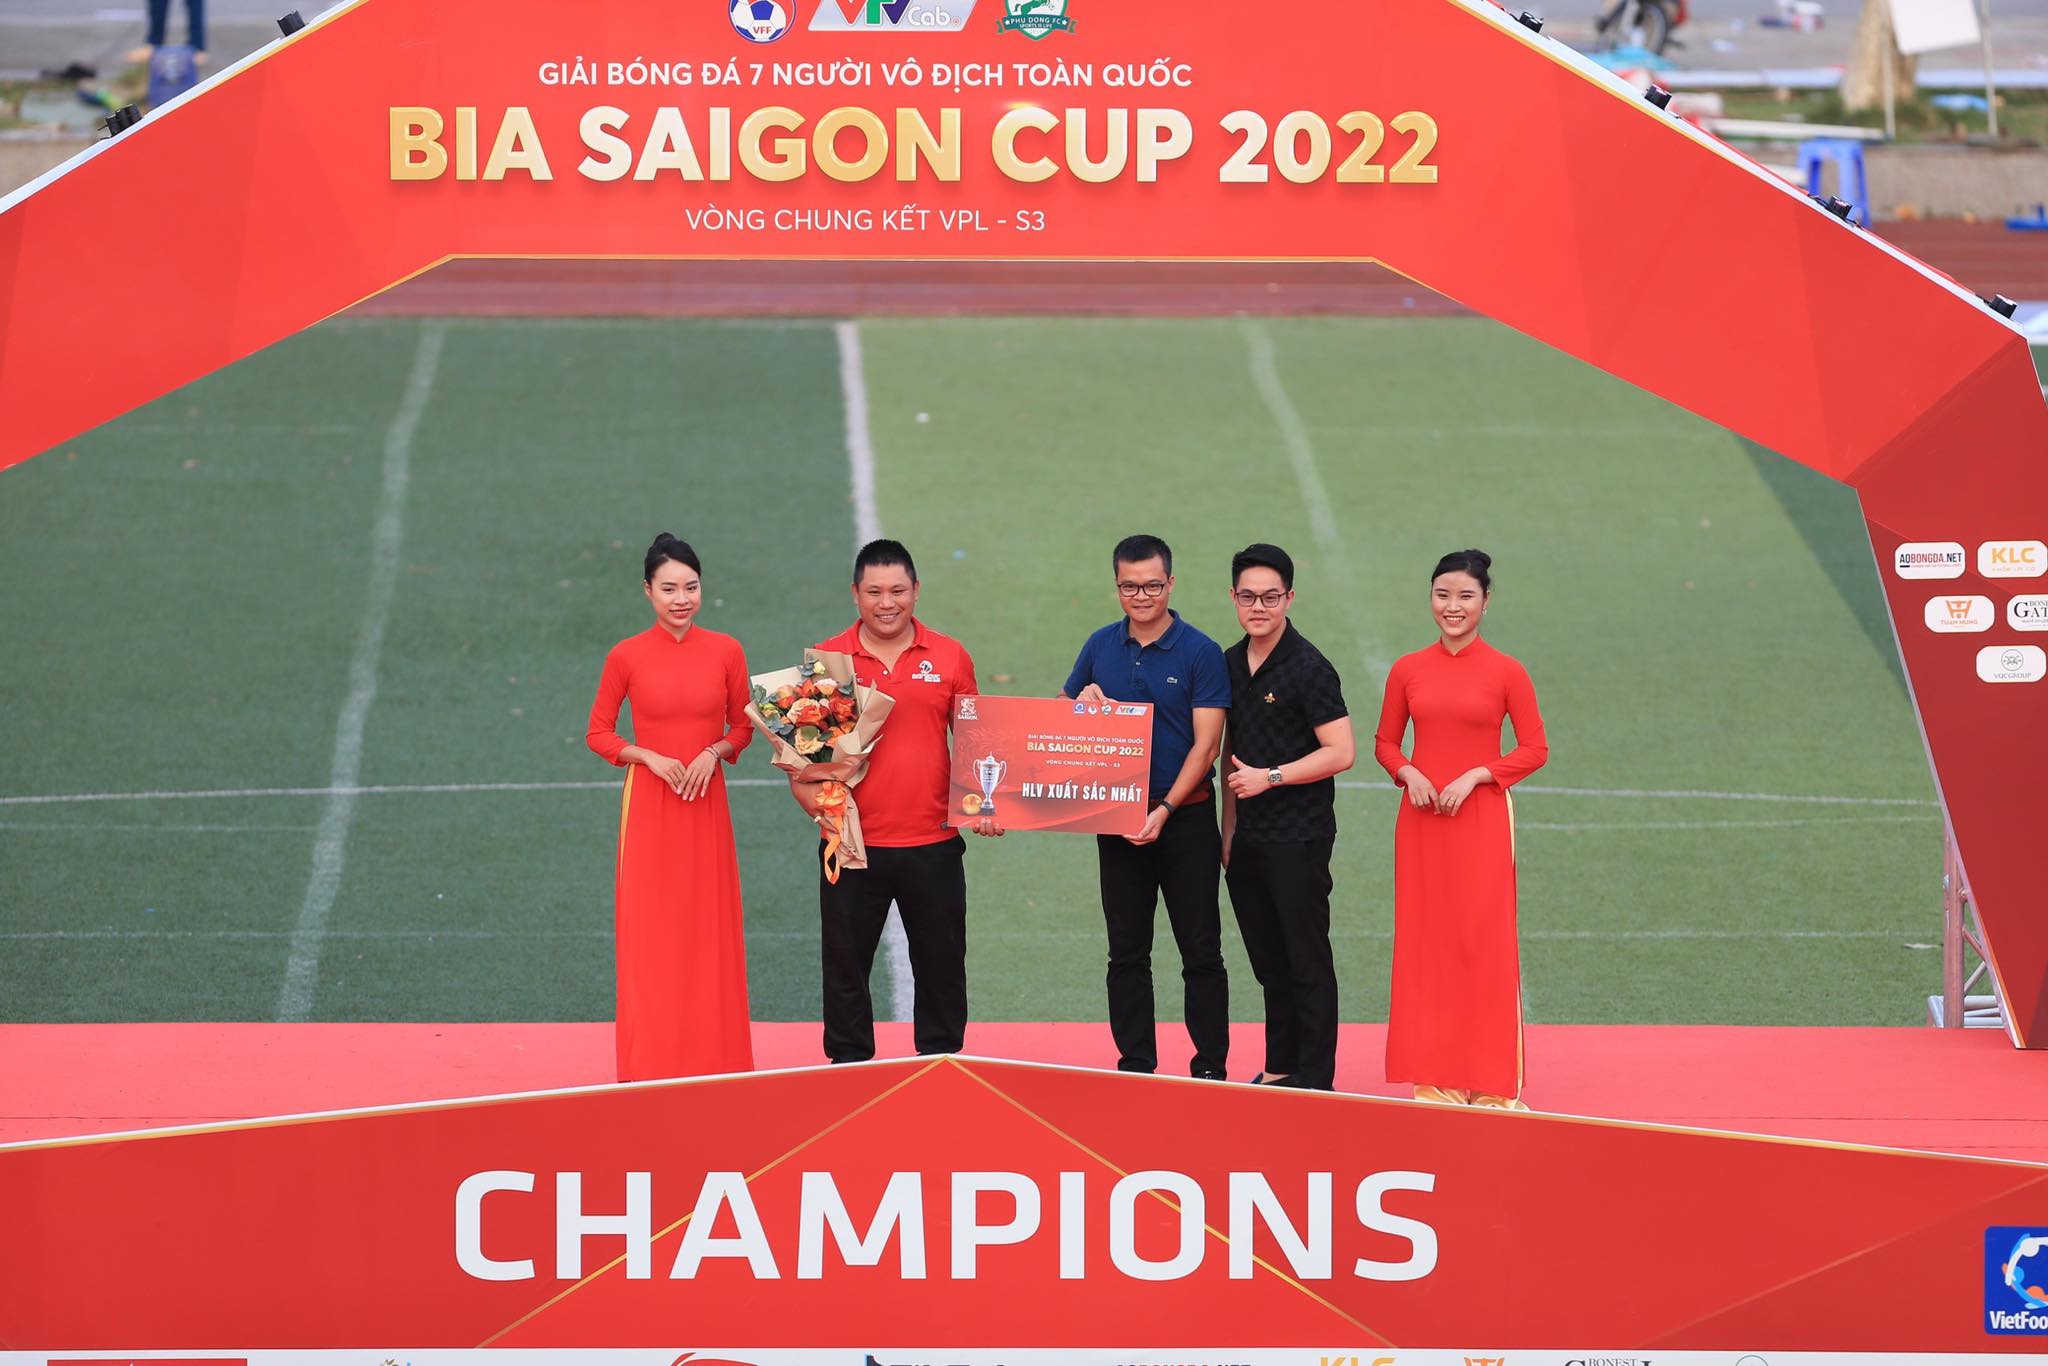 Tổng biên tập Tạp chí Bóng Đá - Nguyễn Tùng Điển đến dự lễ bế mạc, trao giải thưởng HLV xuất sắc nhất giải bóng đá 7 người vô địch toàn quốc 2022 - Ảnh: Đức Cường 